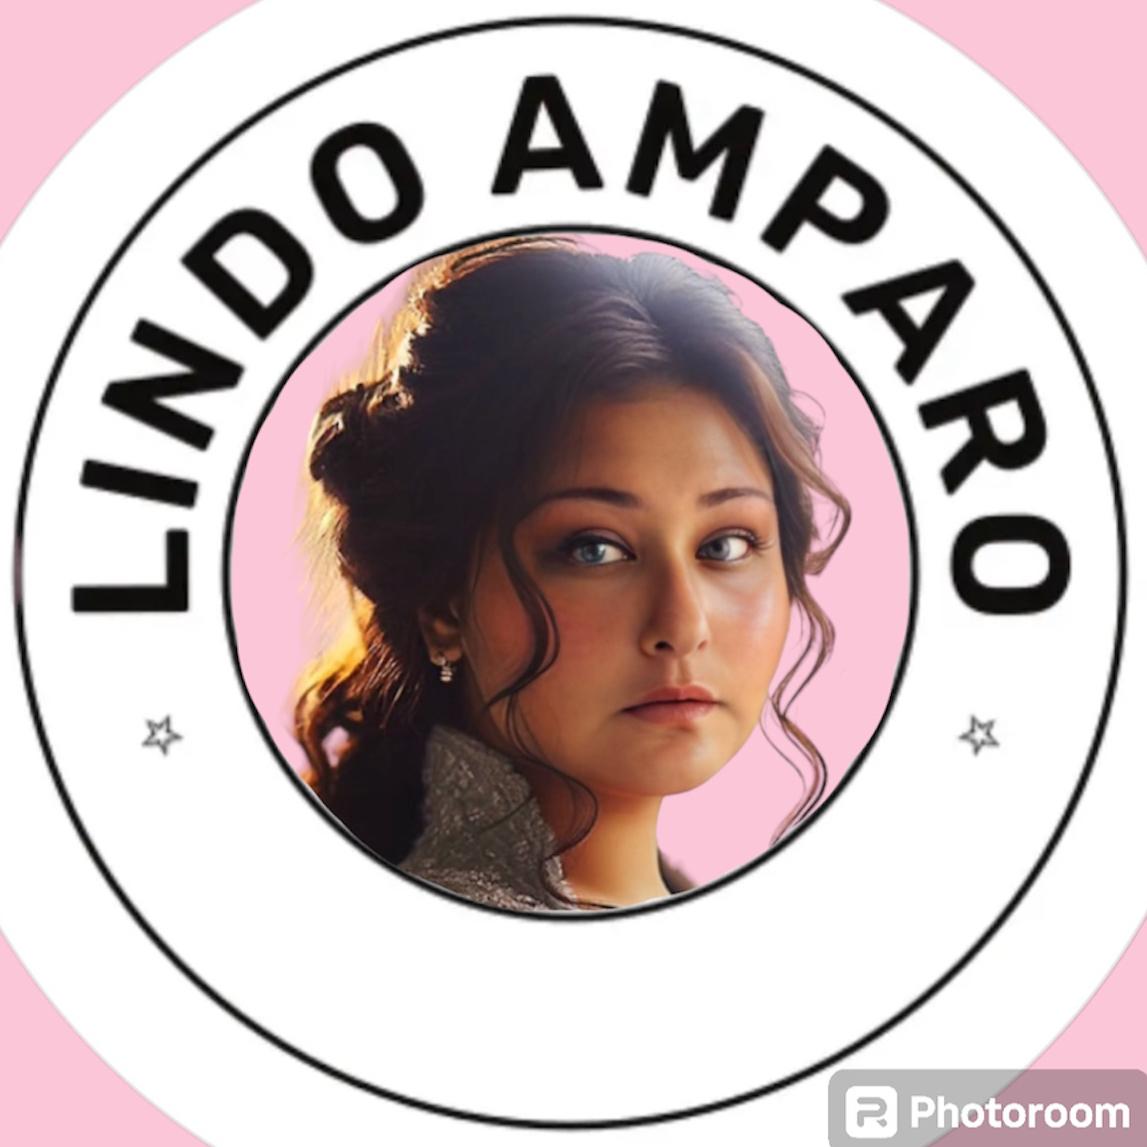 Lindo Amparo's images